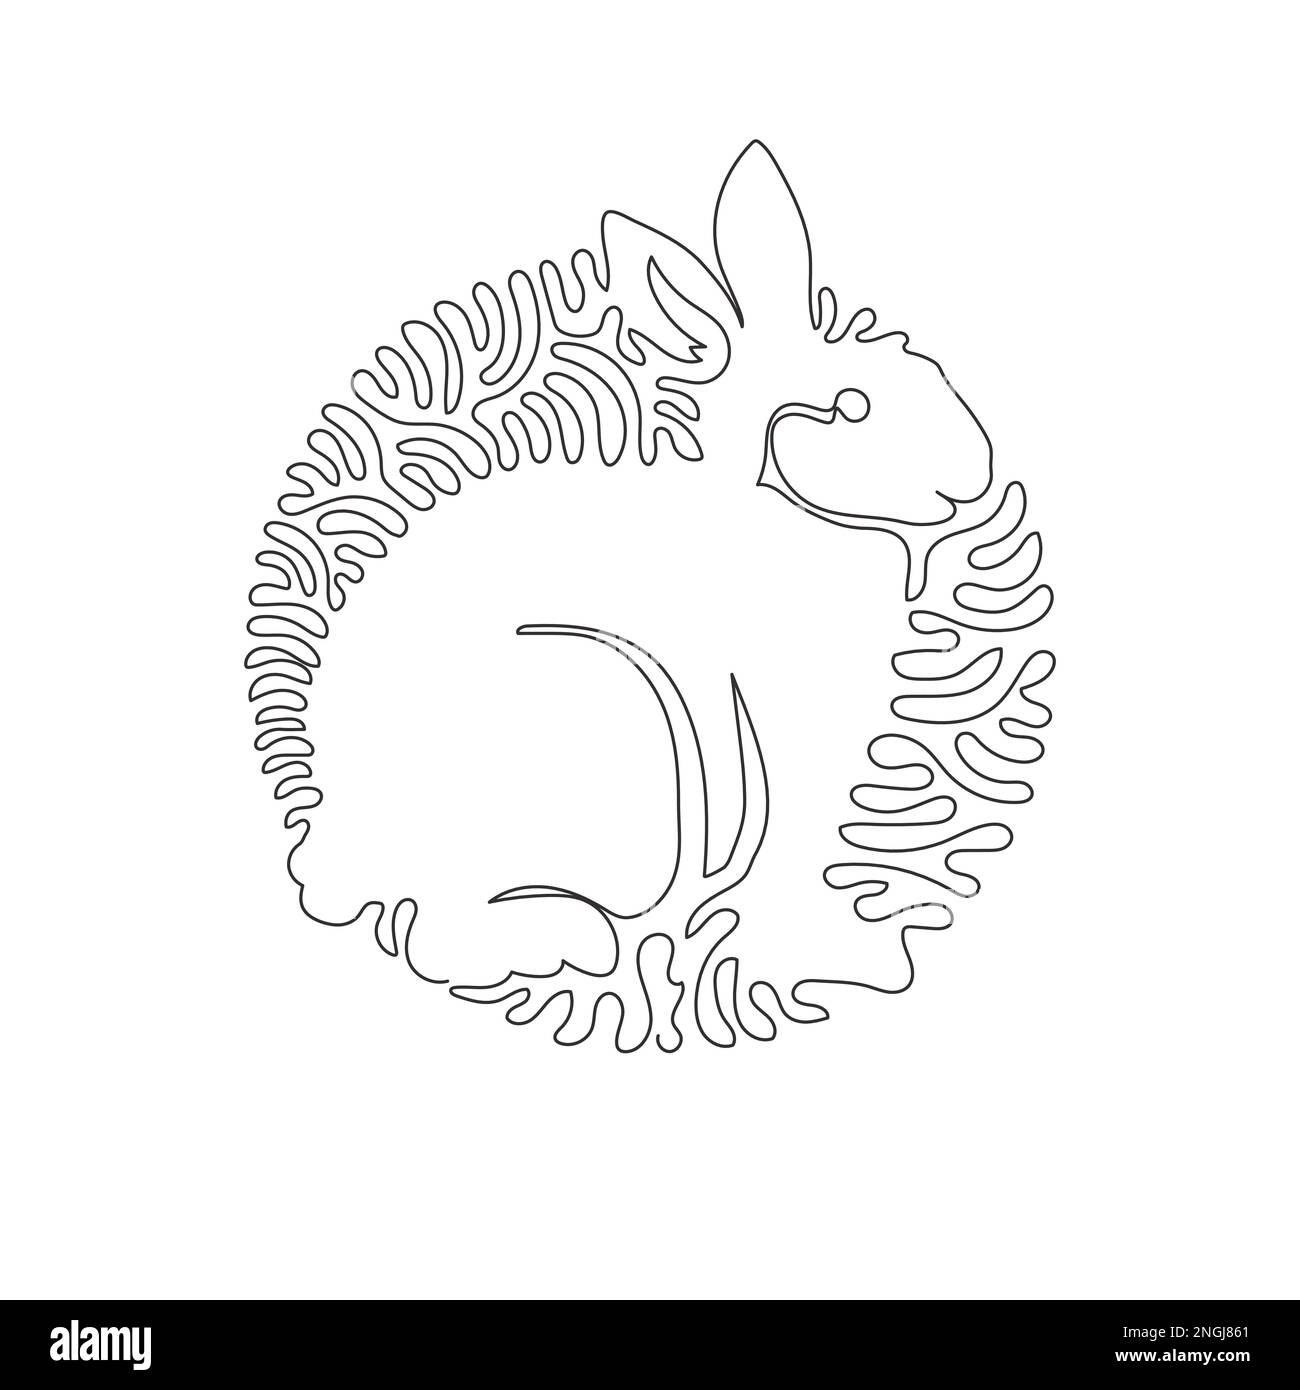 Disegno a linee curve continue di simpatica arte astratta di coniglio L'illustrazione del vettore di corsa modificabile a linea singola del coniglio è un mammifero con orecchie lunghe Illustrazione Vettoriale